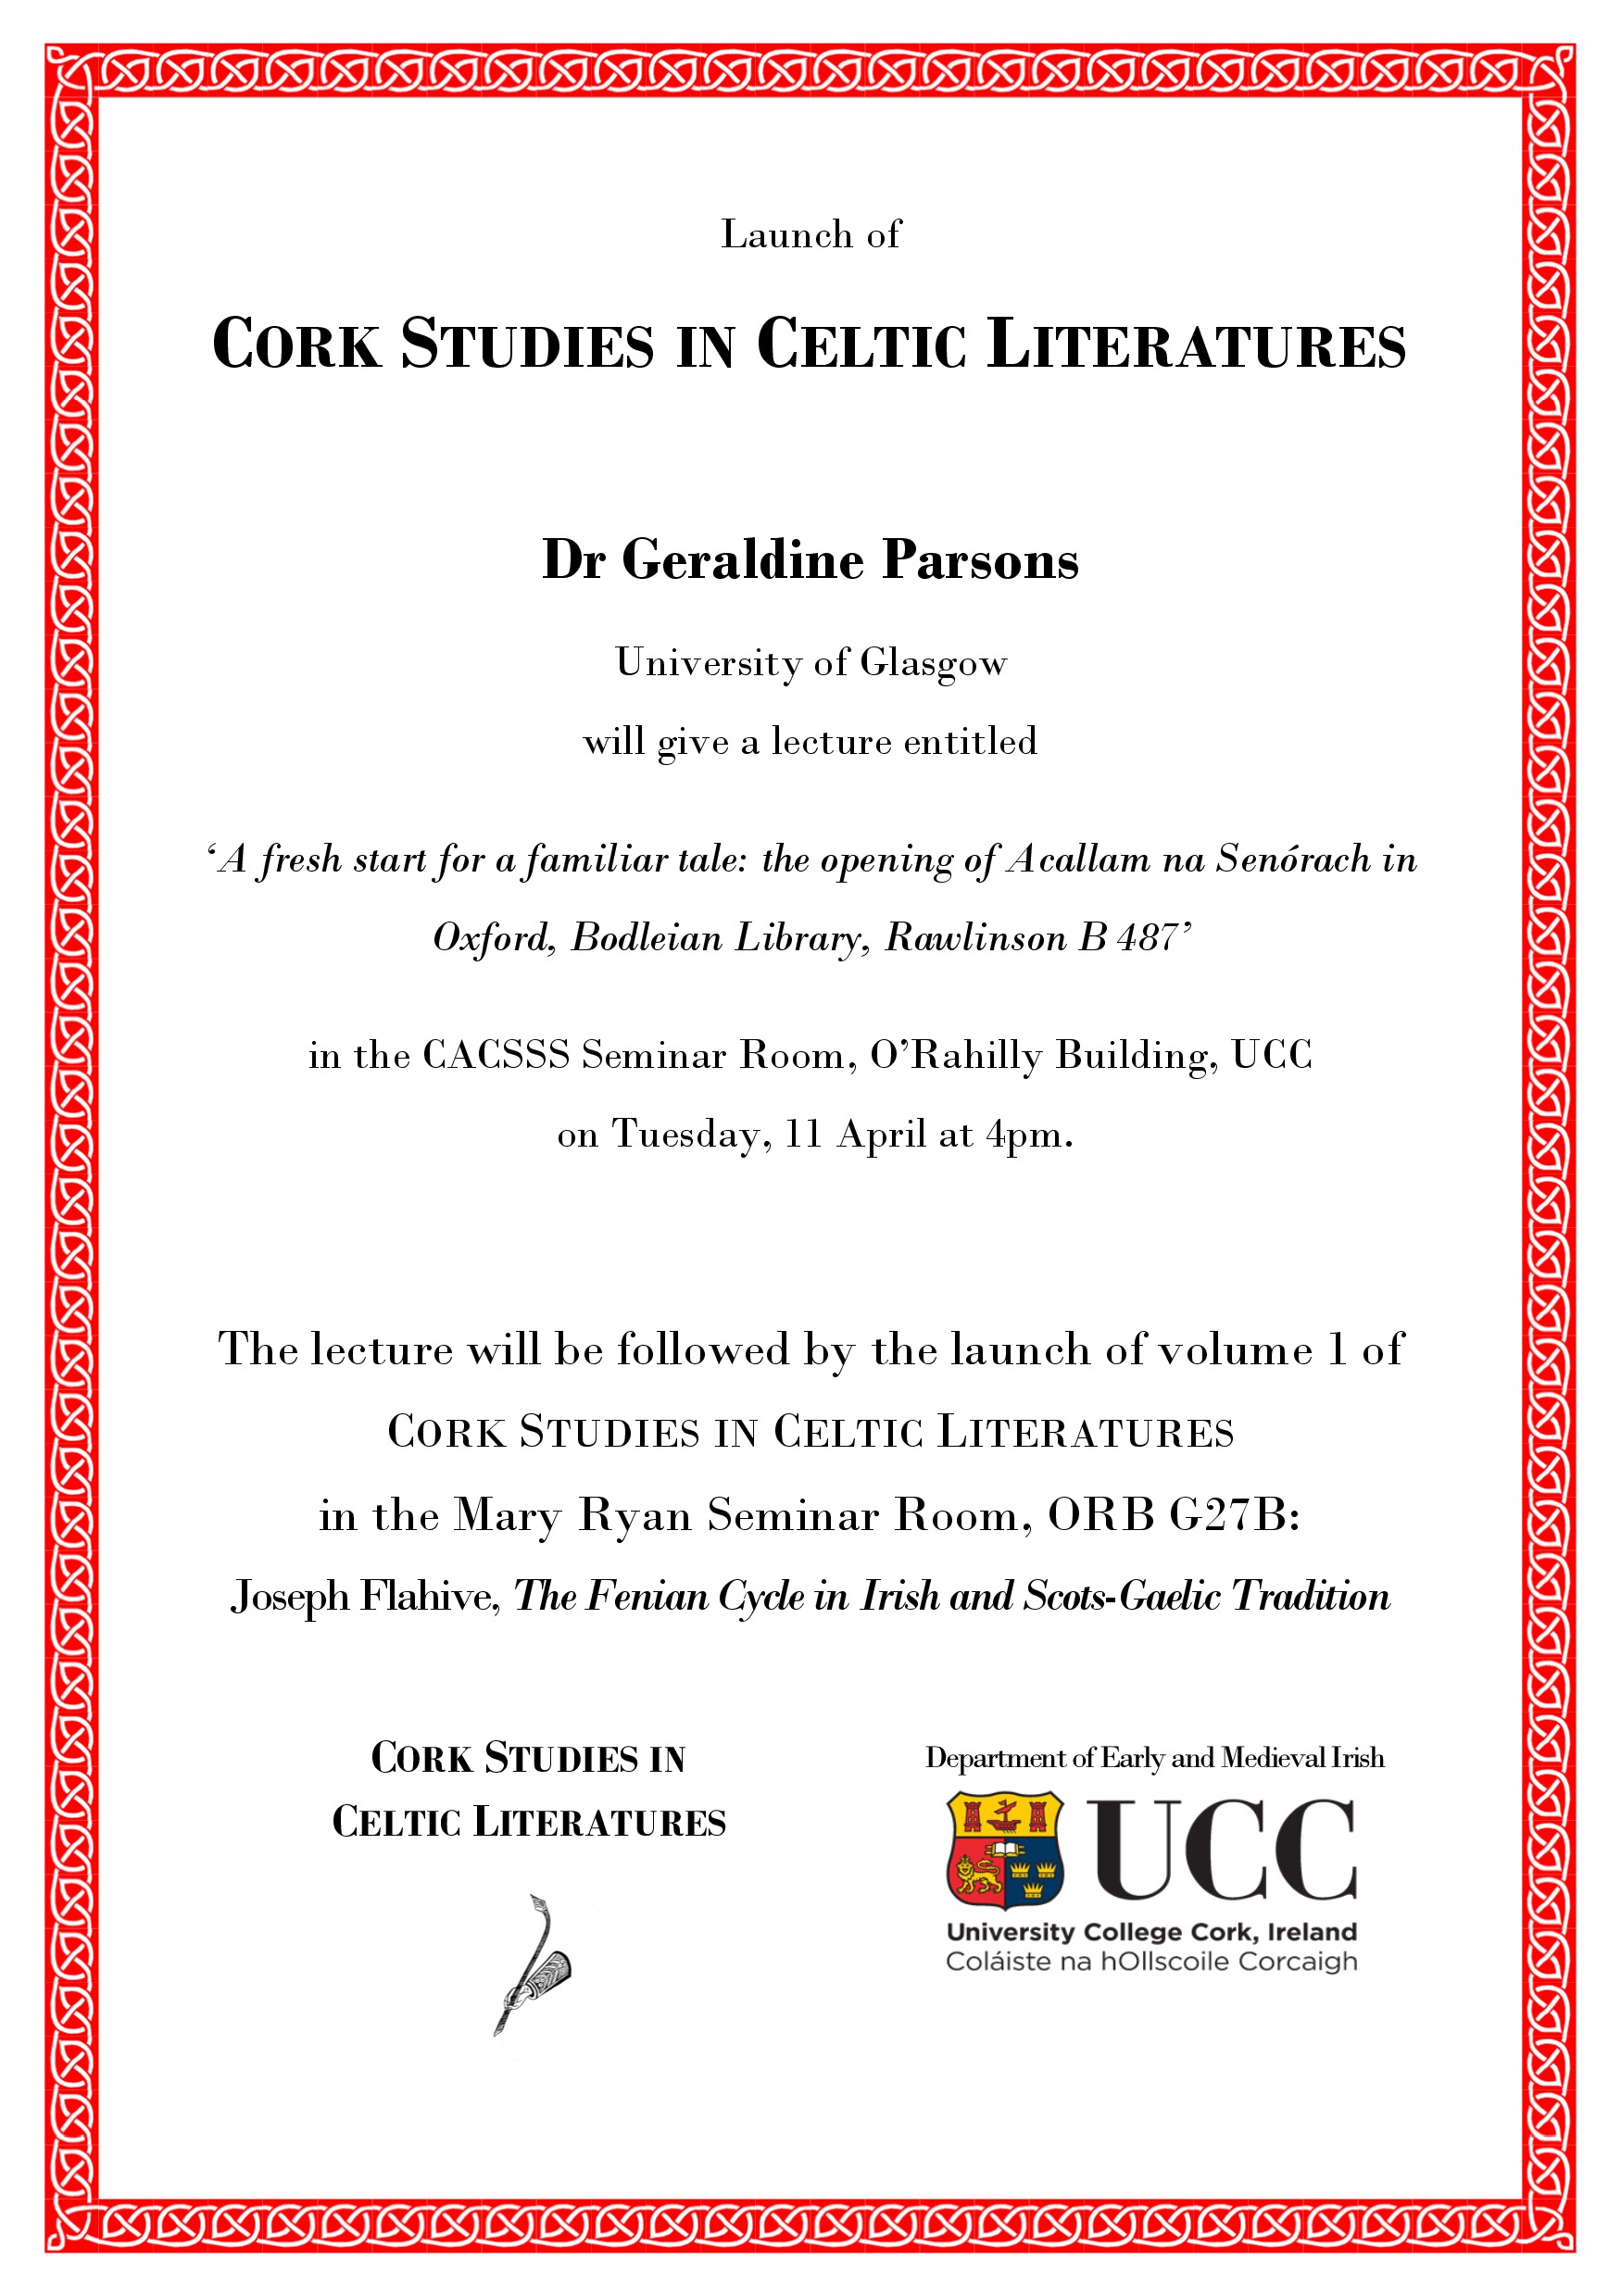 Cork Studies in Celtic Literatures